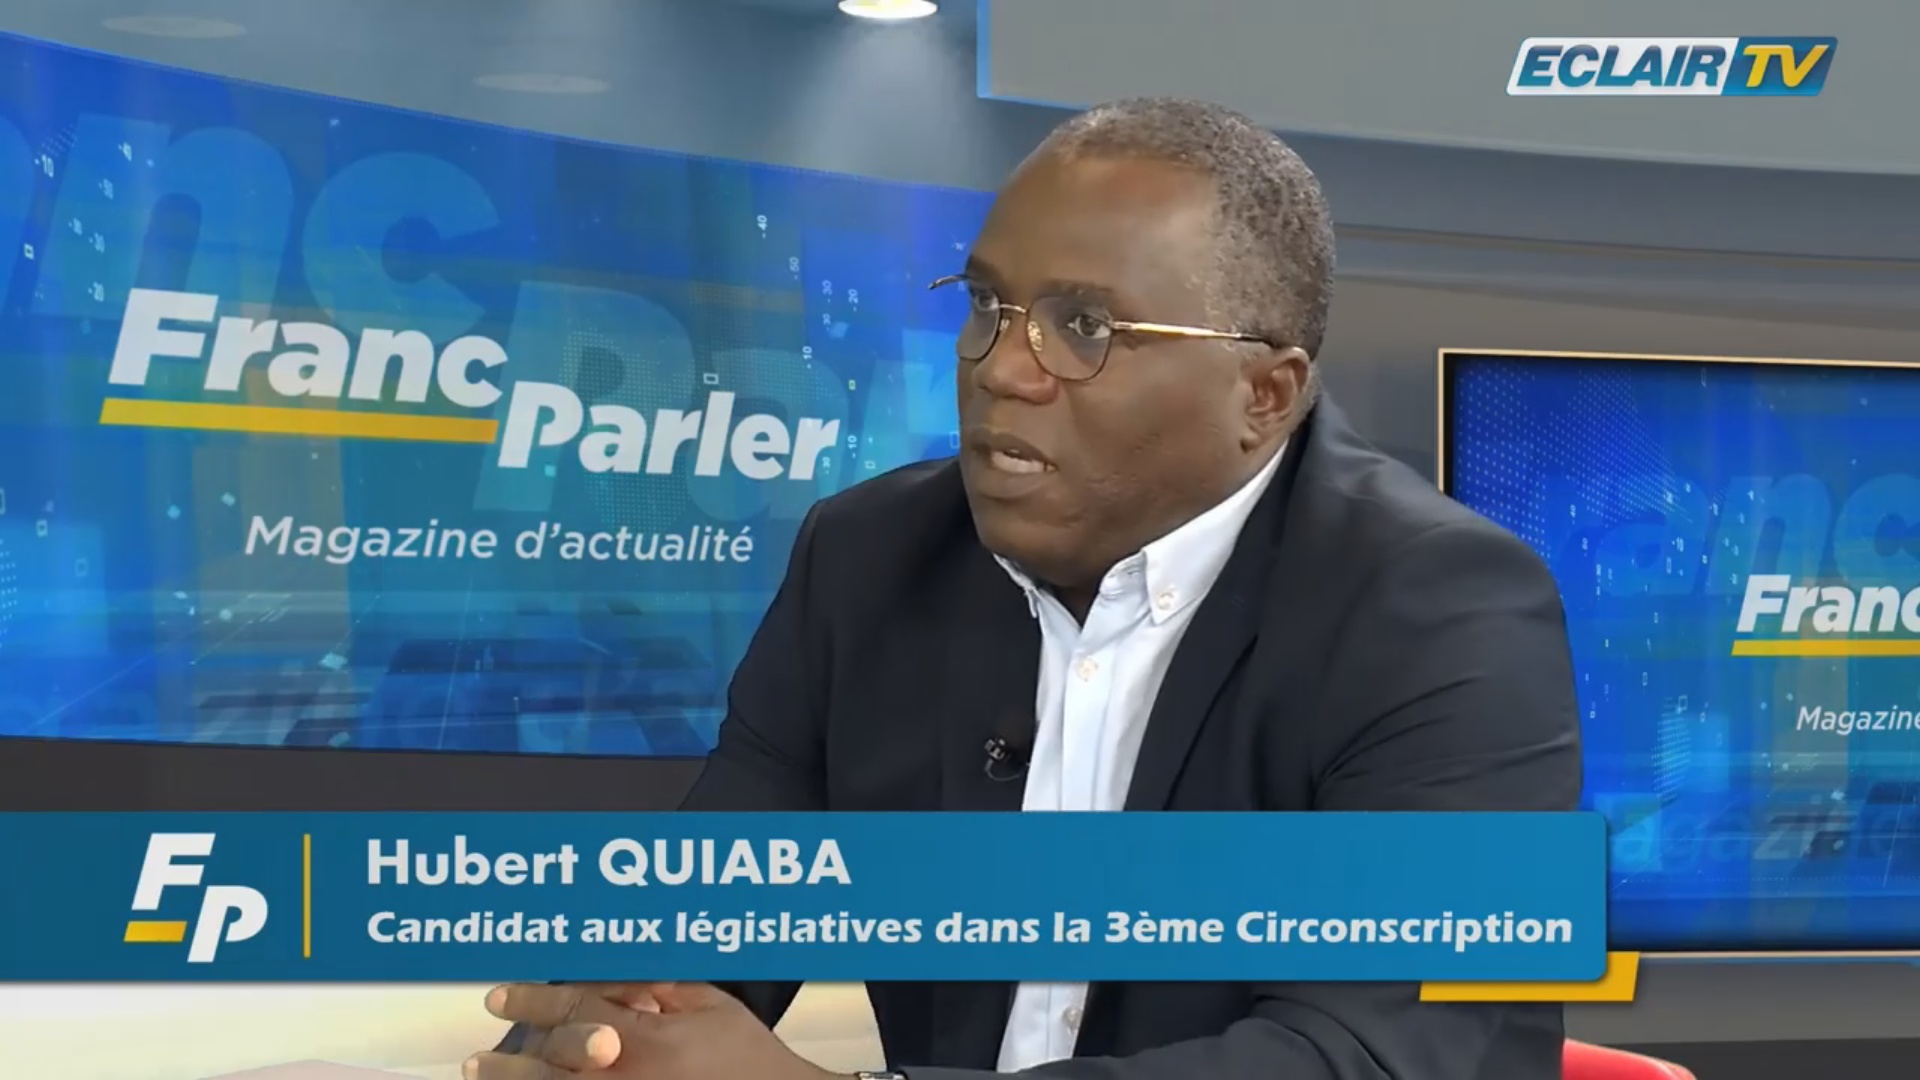 [Vidéo] Guadeloupe. Législatives. Hubert QUIABA Candidat dans la 3ème circonscription (Eclair Tv)